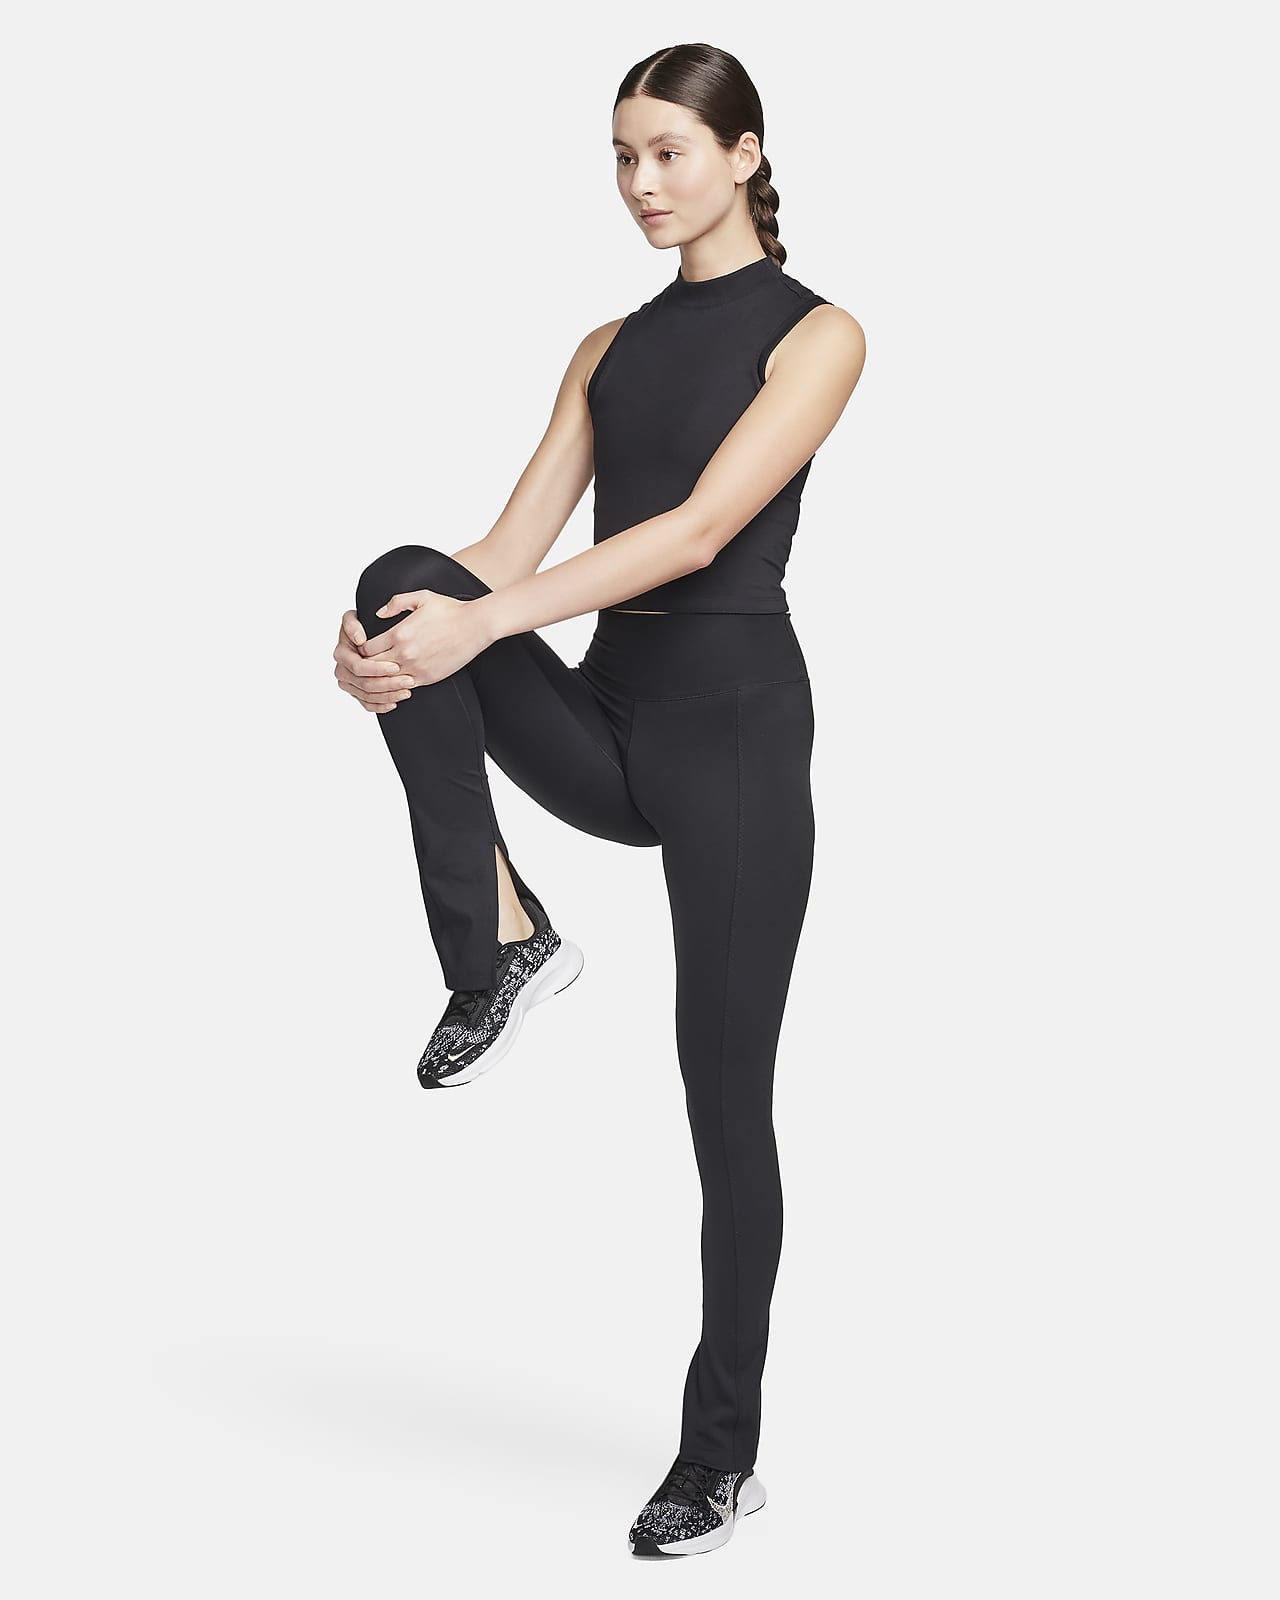 Women's High-Waisted Leggings. Nike NL